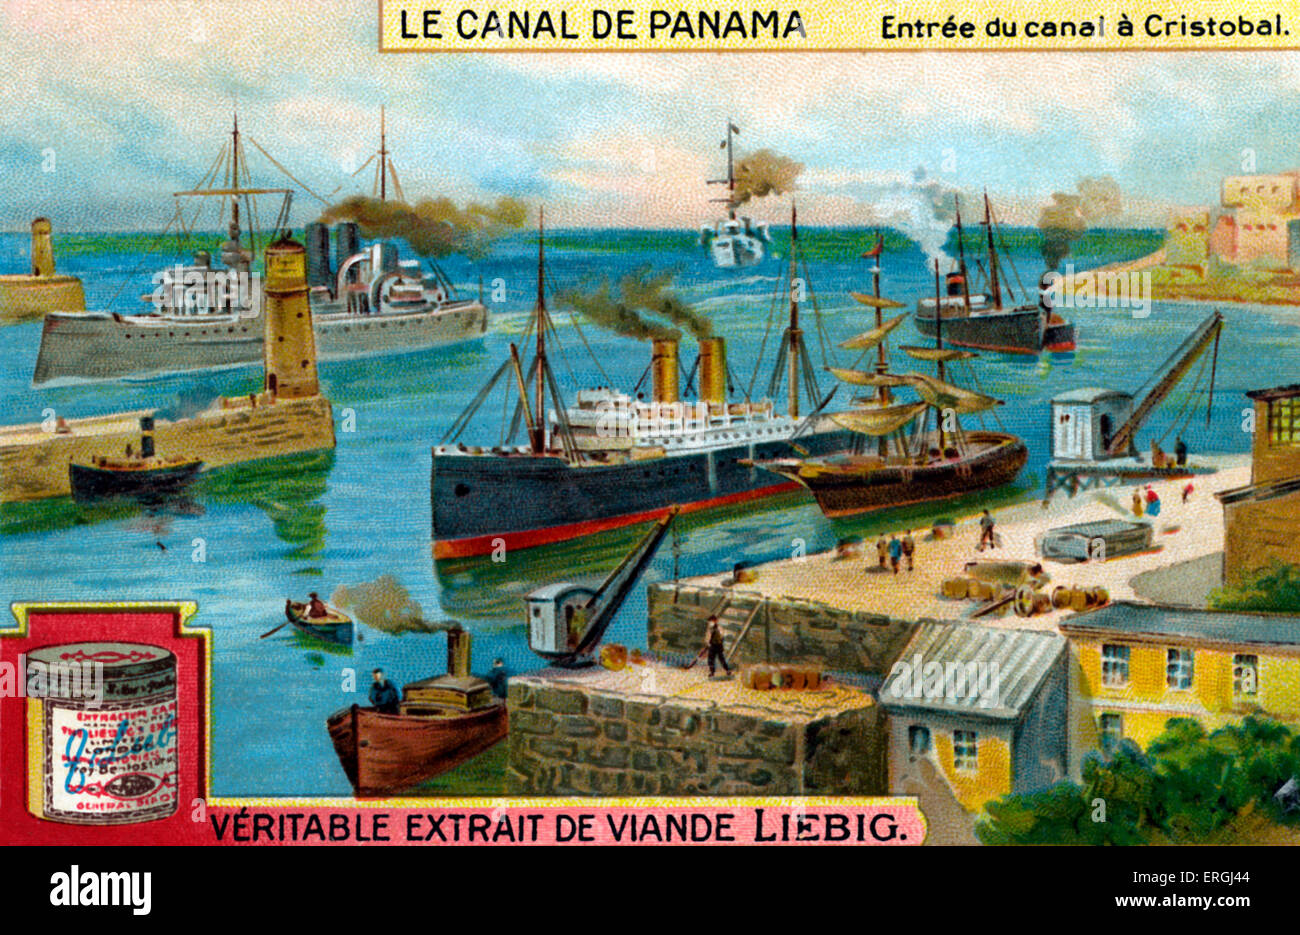 Der Panama-Kanal: Eingang zum Kanal bei Cristobal (auf dem Altanic Ozean).   Liebig Sammelkarten-Serie (französischer Titel: "Le Stockfoto